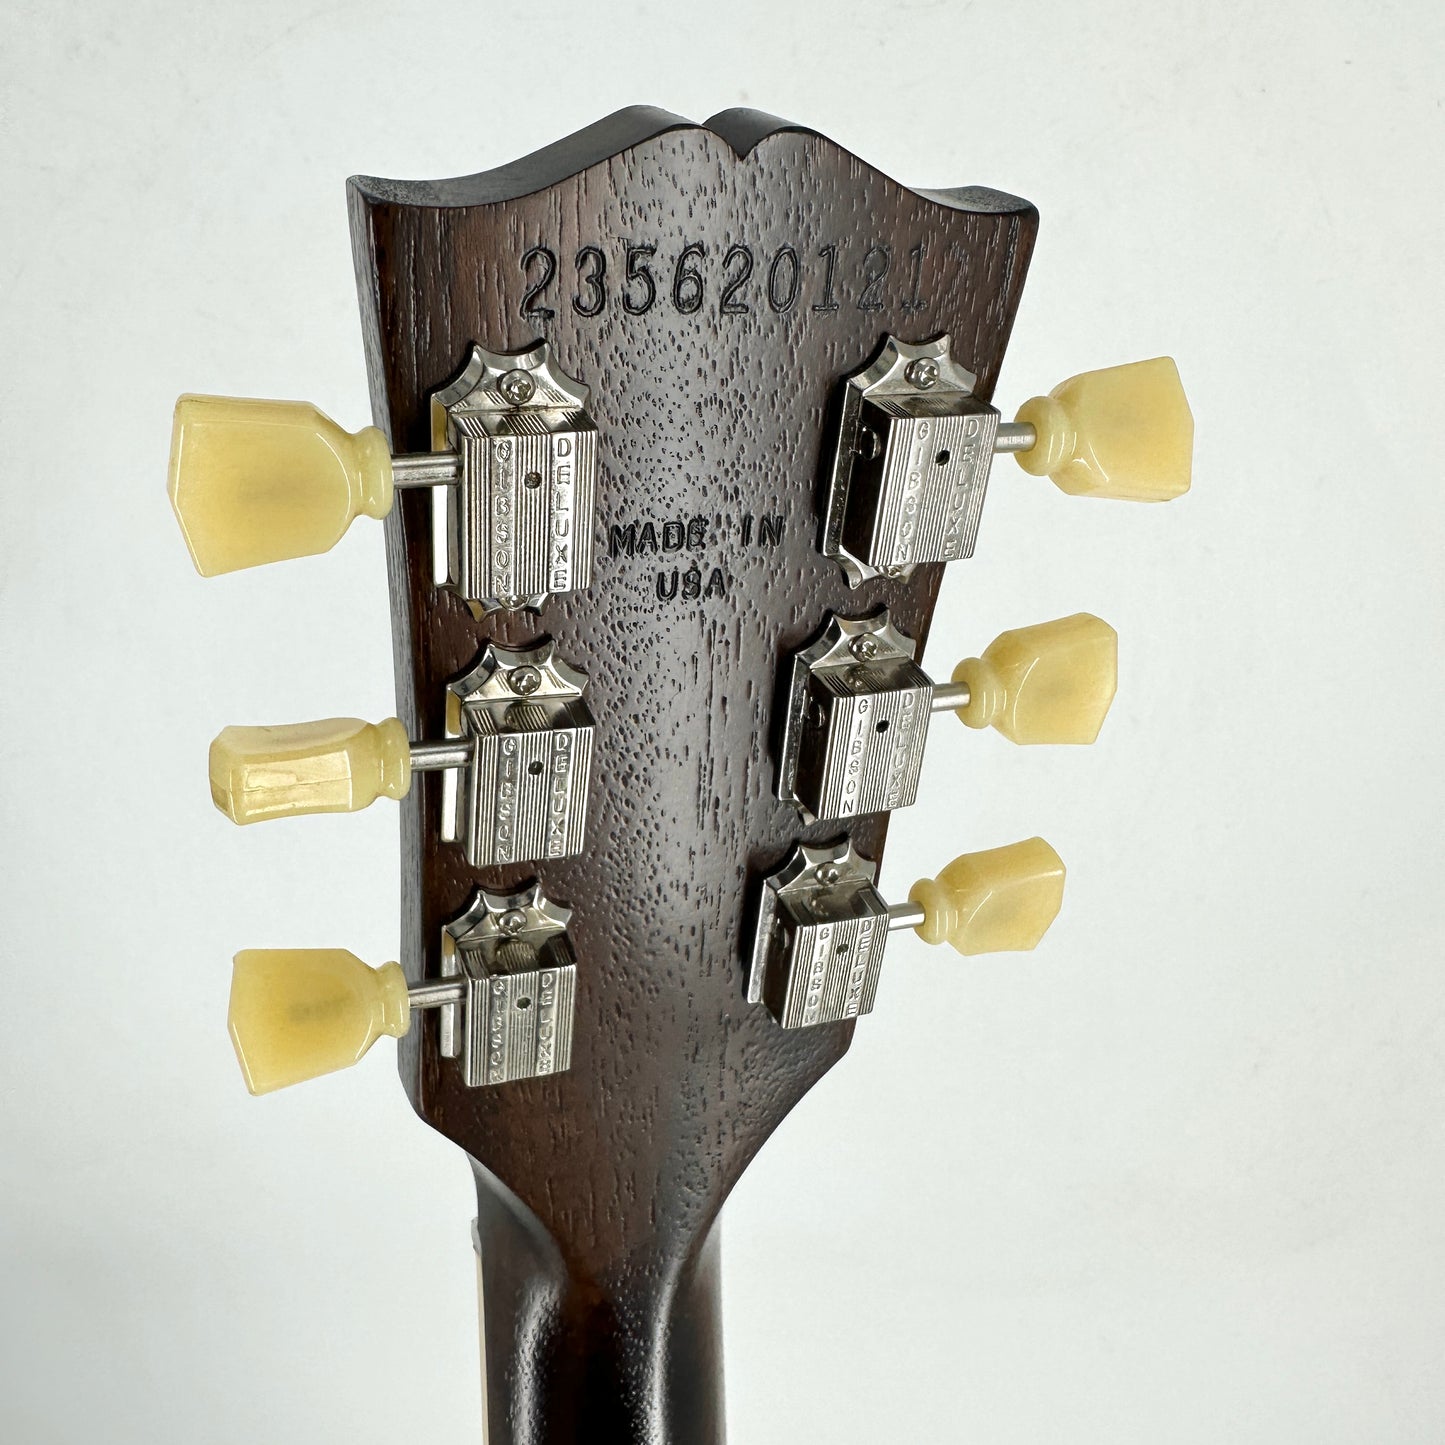 2023 Gibson ES-335 – Satin Vintage Burst